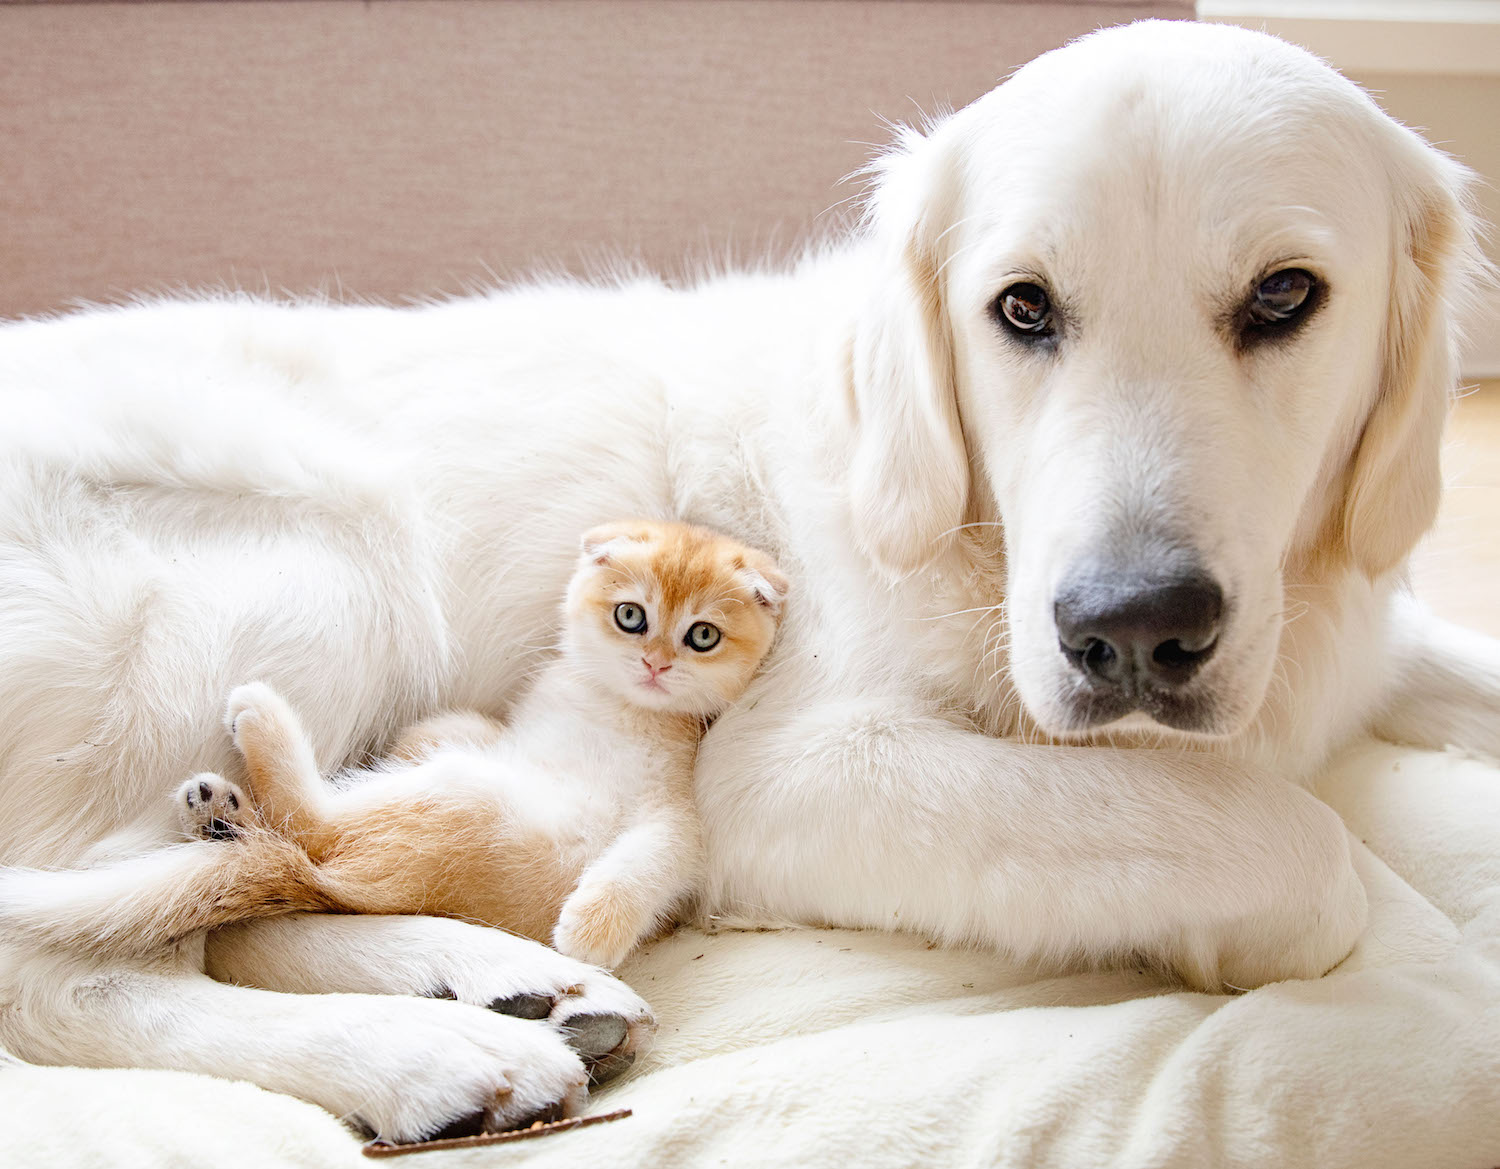 Chó và mèo có thể là những kẻ thù truyền kiếp, nhưng cũng có thể là những người bạn đồng hành thân thiết. Hãy xem hình ảnh này để ngắm nhìn tình bạn đẹp đẽ giữa hai loài vật.